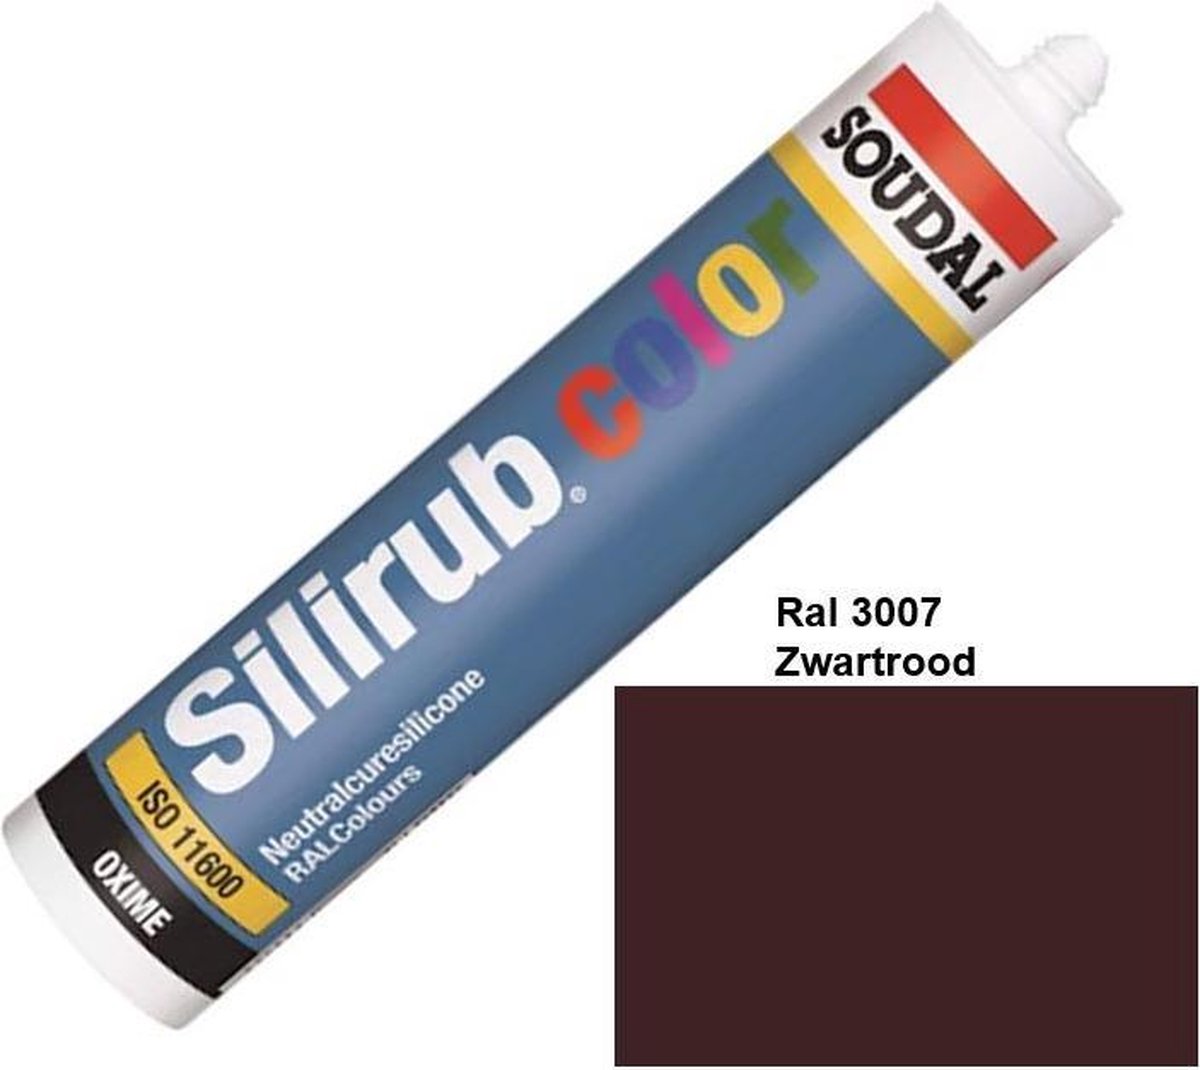 Soudal Silirub Color - Siliconekit - Montagekit - ook voor sanitaire ruimten - koker 310 ml - RAL 3007 - Zwartrood